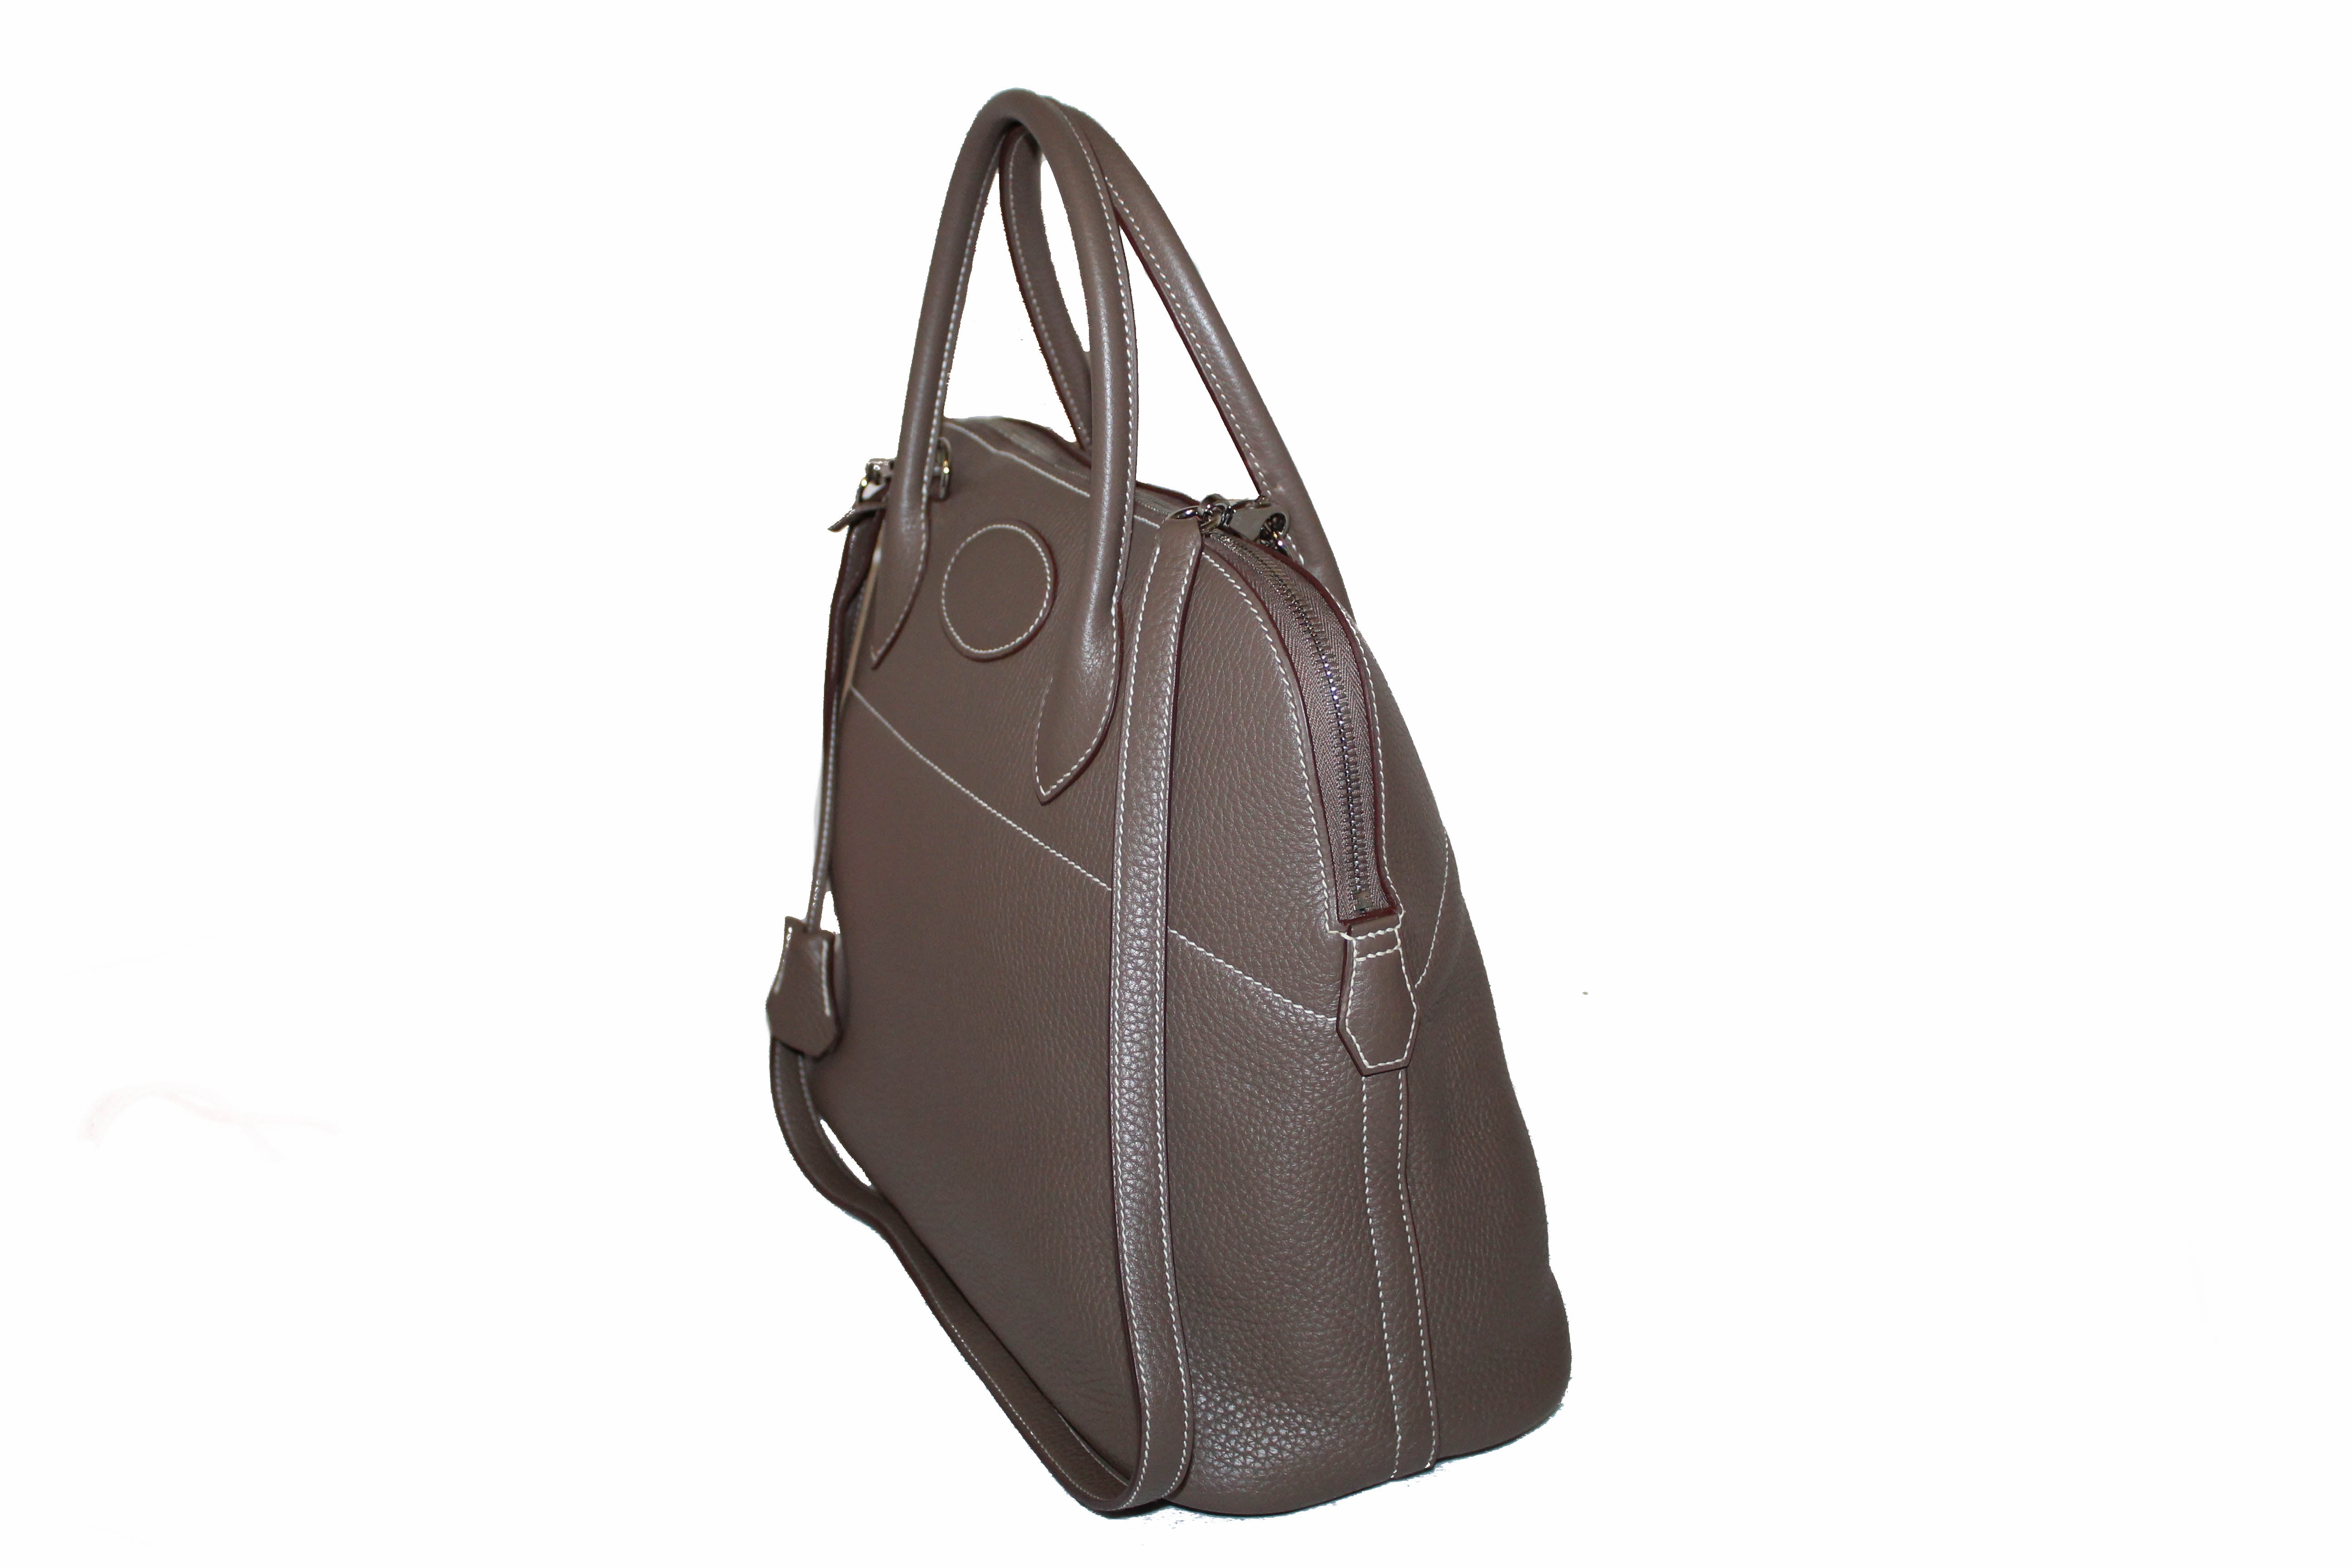 Authentic Hermes Etoupe Bolide 35 Clemence Leather Handbag/Shoulder Ba – Paris Station Shop